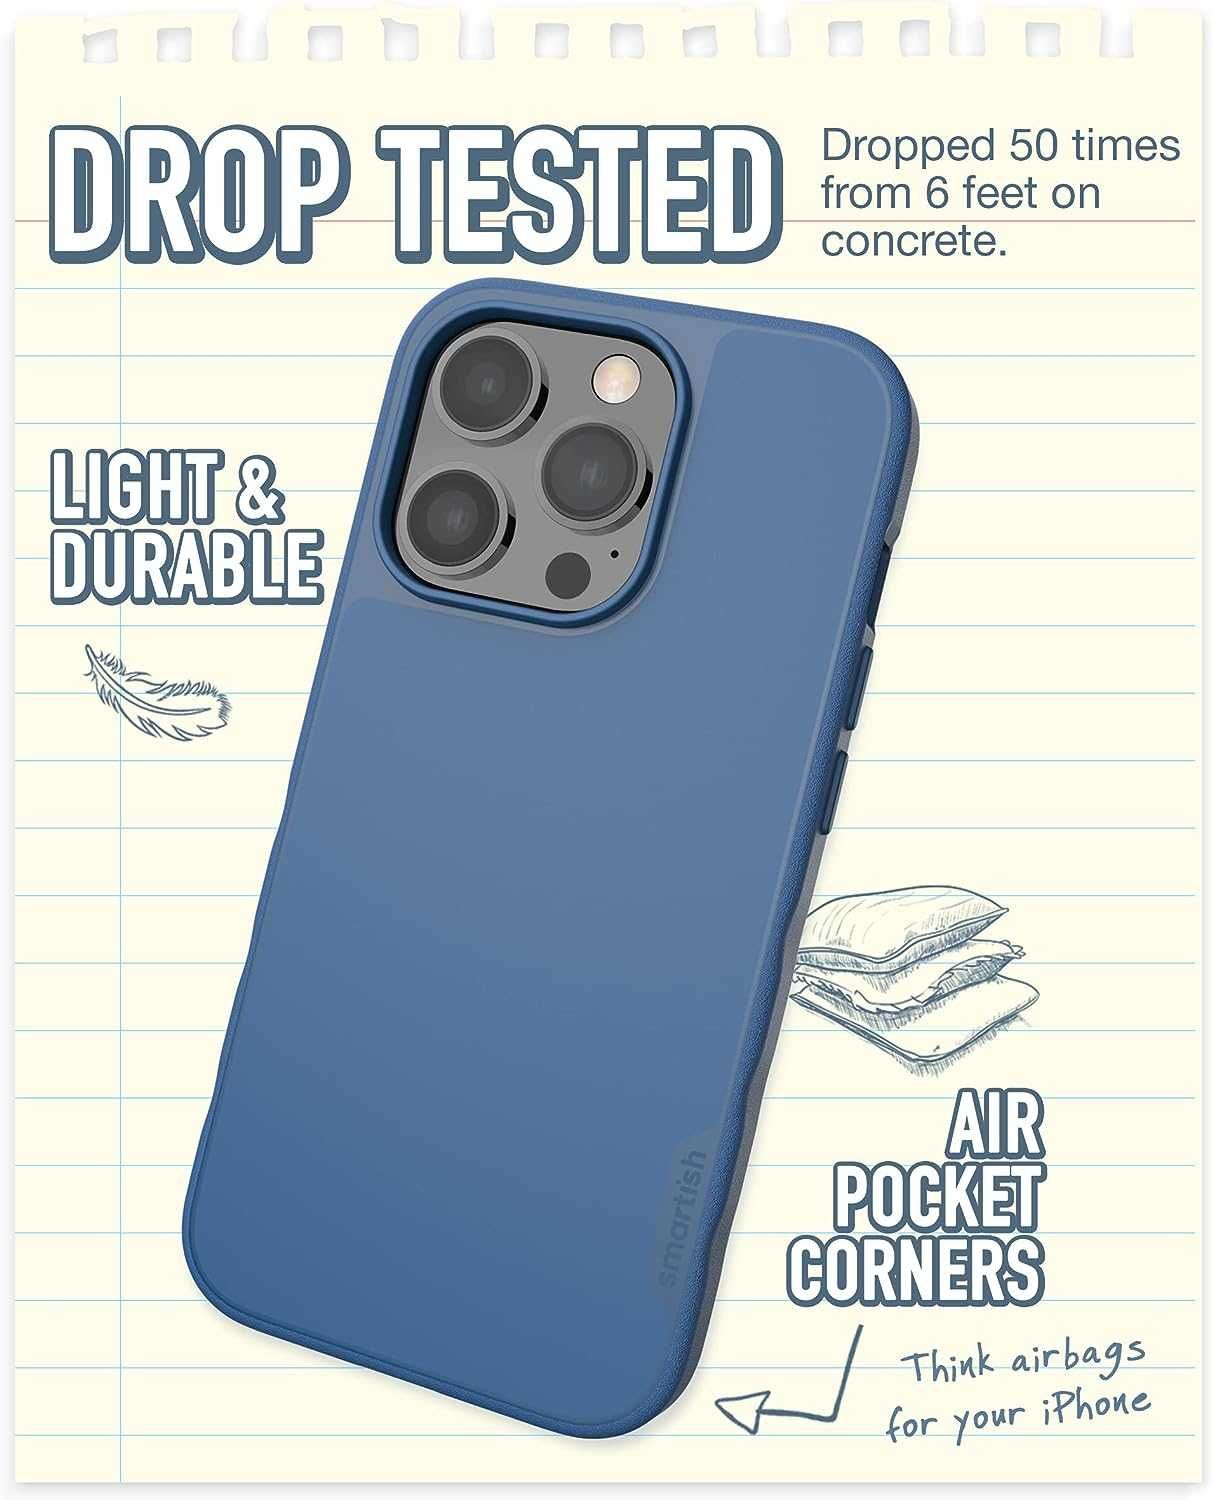 Husa Iphone 14 Pro Smartish Gripmunk